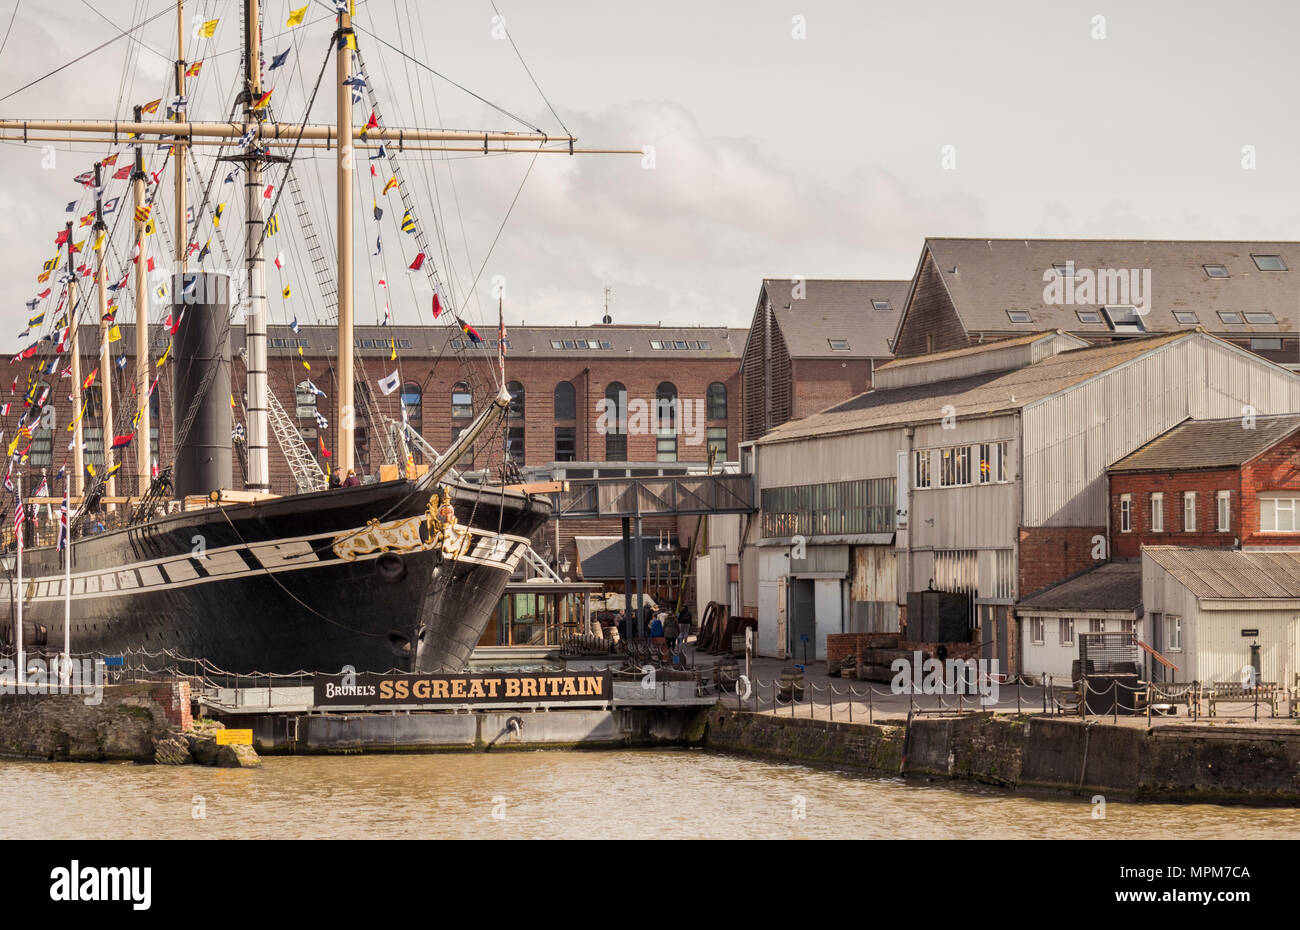 SS Great Britain de Brunel, maintenant un musée sur le port de Bristol. Banque D'Images